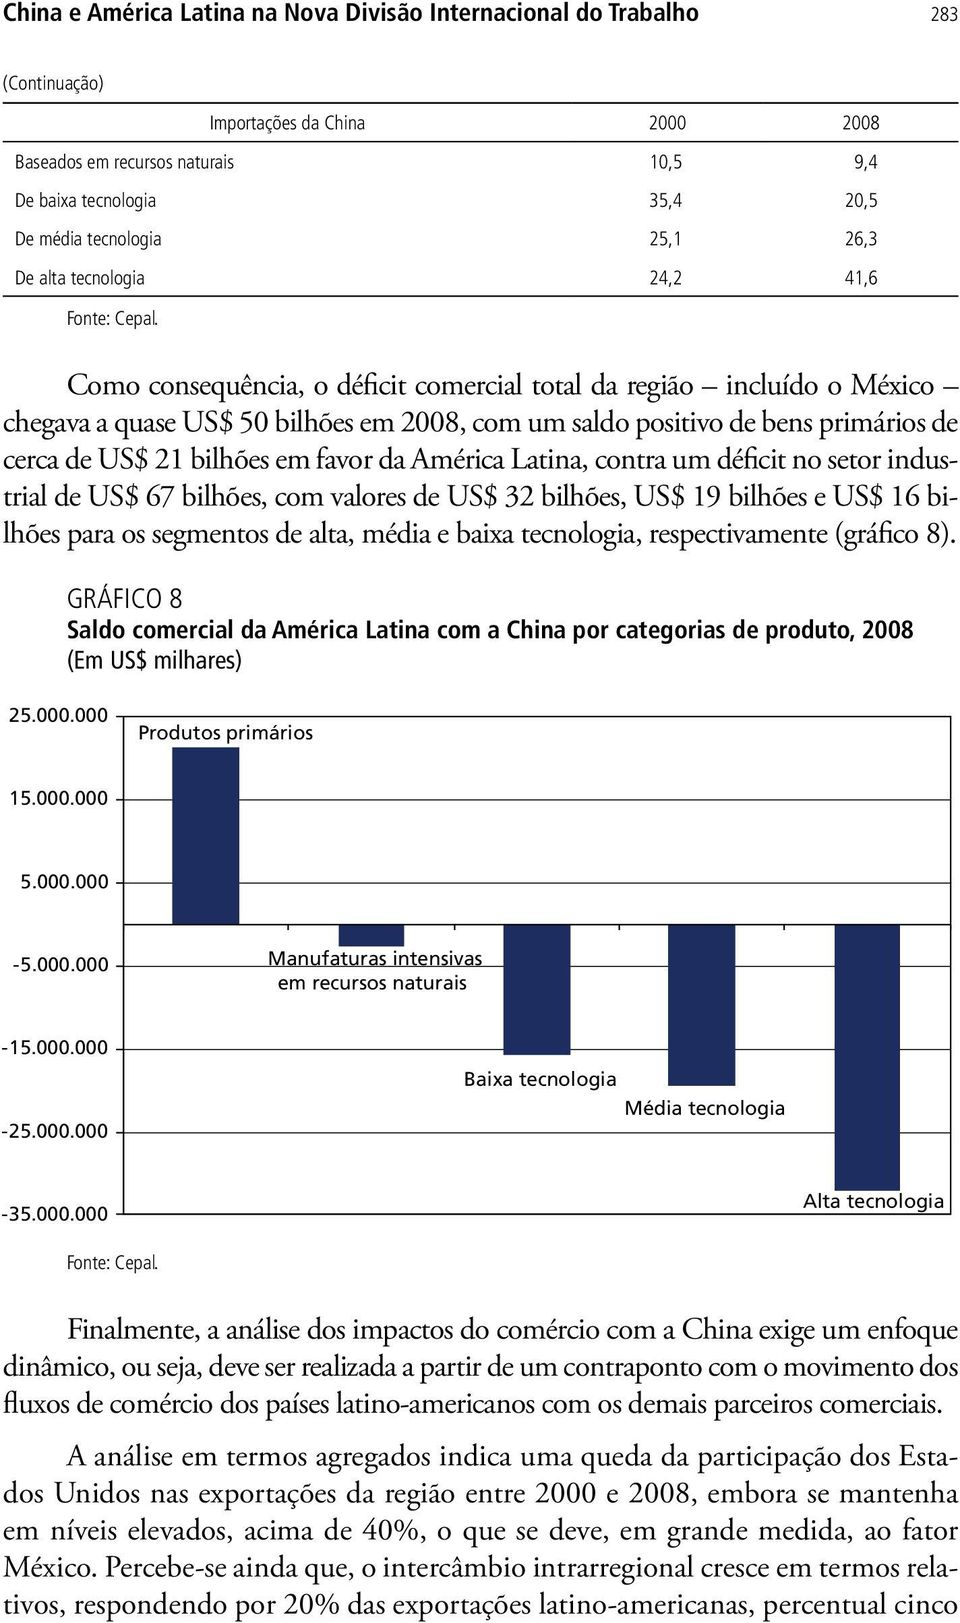 Como consequência, o déficit comercial total da região incluído o México chegava a quase US$ 50 bilhões em 2008, com um saldo positivo de bens primários de cerca de US$ 21 bilhões em favor da América